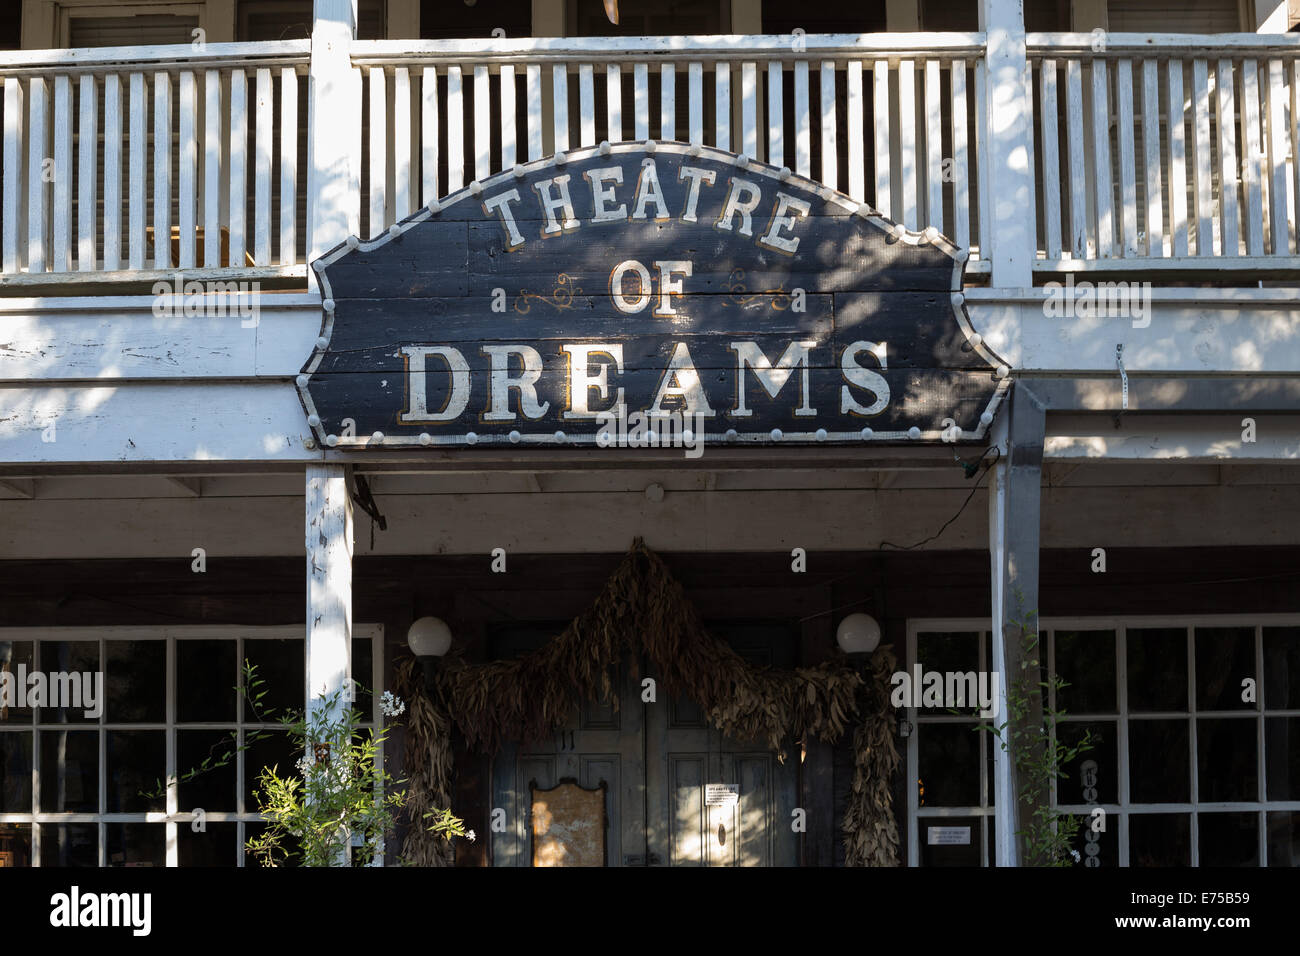 Theatre of Dreams in historischen Zentrum von Port Costa Kalifornien. Stockfoto